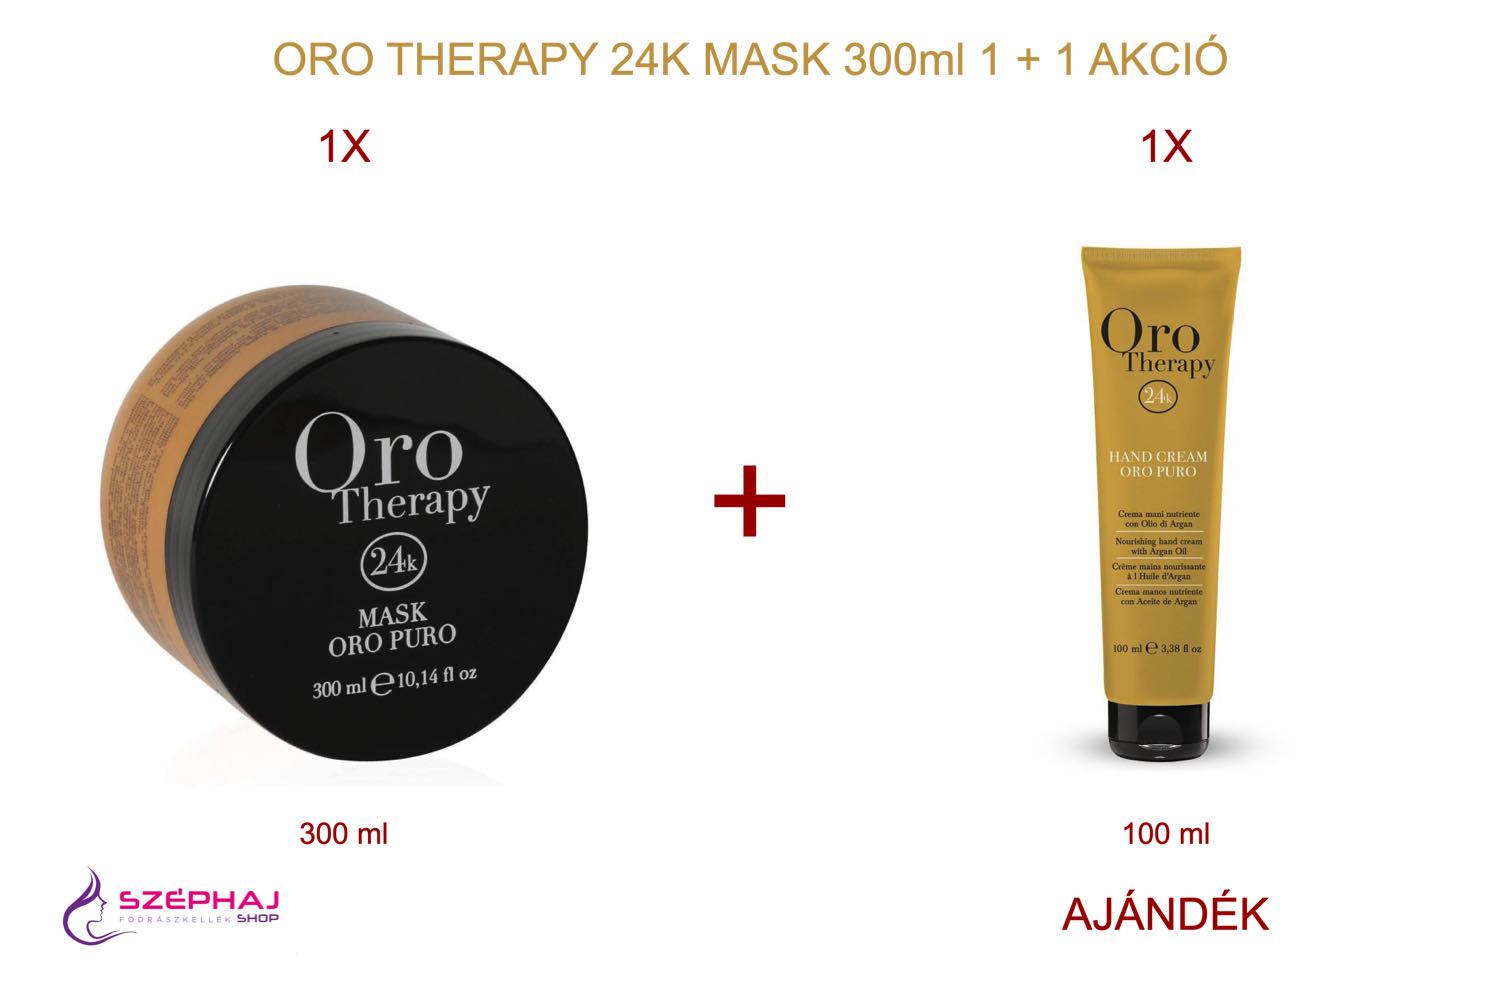 FANOLA ORO Therapy Mask 300 ml 1+1 AKCIÓ